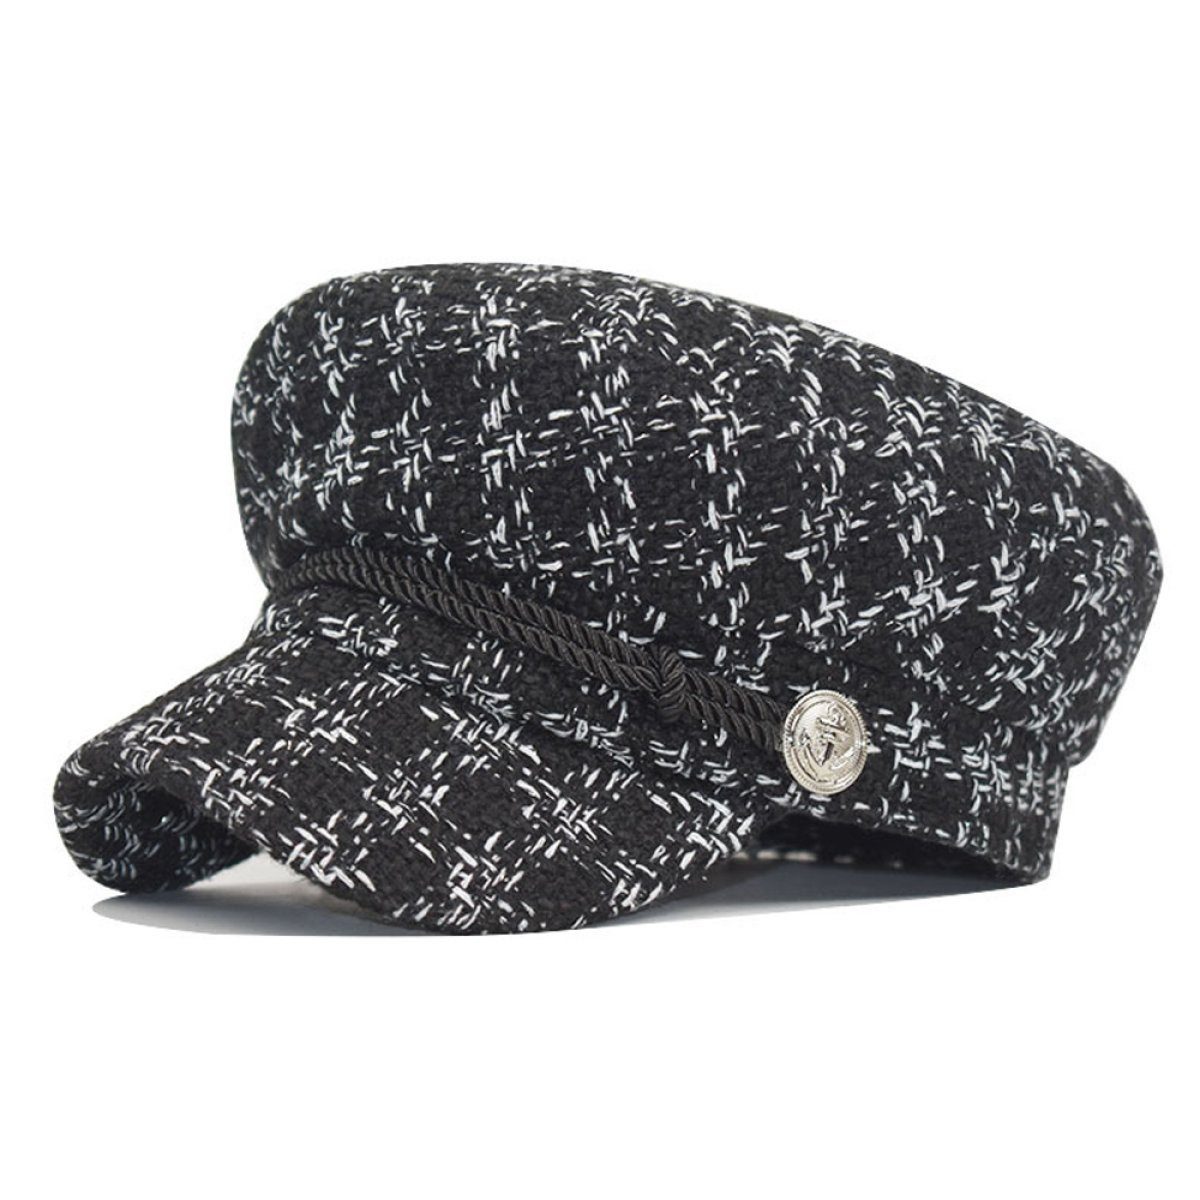 LENBEST Baskenmütze Schirmmütze Lässig Kappe Elegant Wintermütze für Frauen (56-58cm) black | Baskenmützen